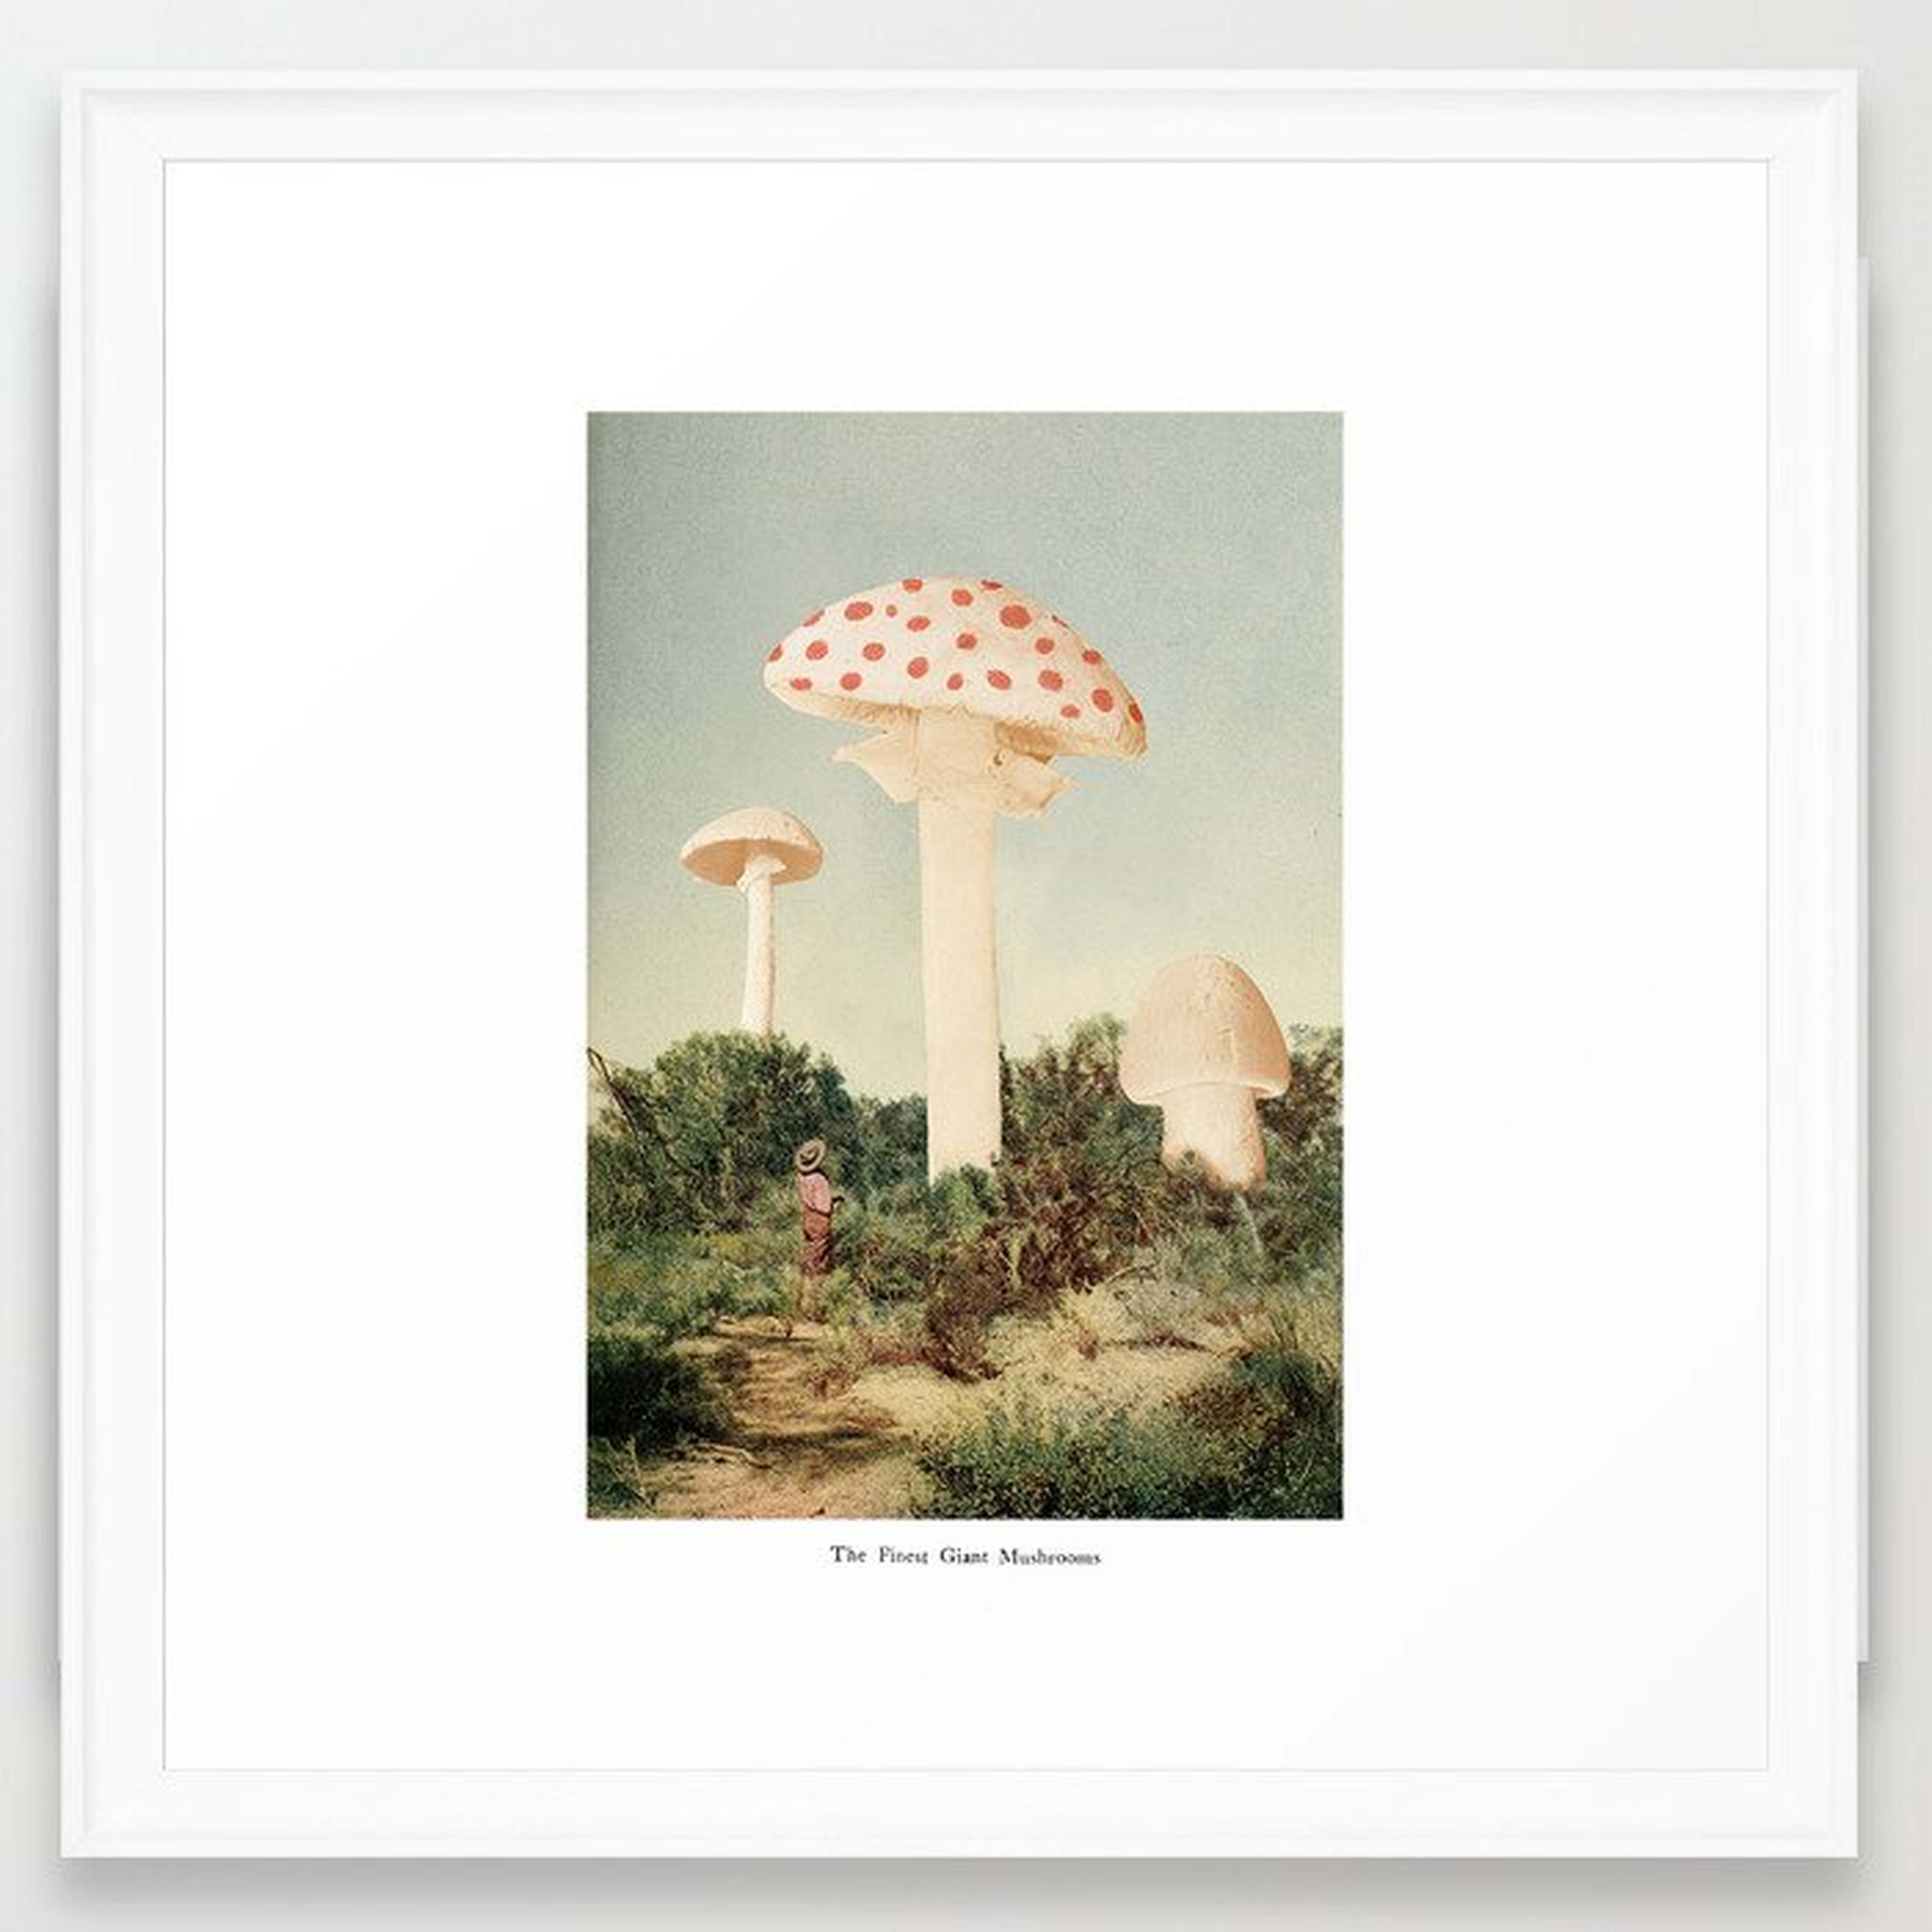 The Finest Giant Mushrooms Framed Art Print by Florent Bodart / Speakerine - Scoop White - MEDIUM (Gallery)-22x22 - Society6